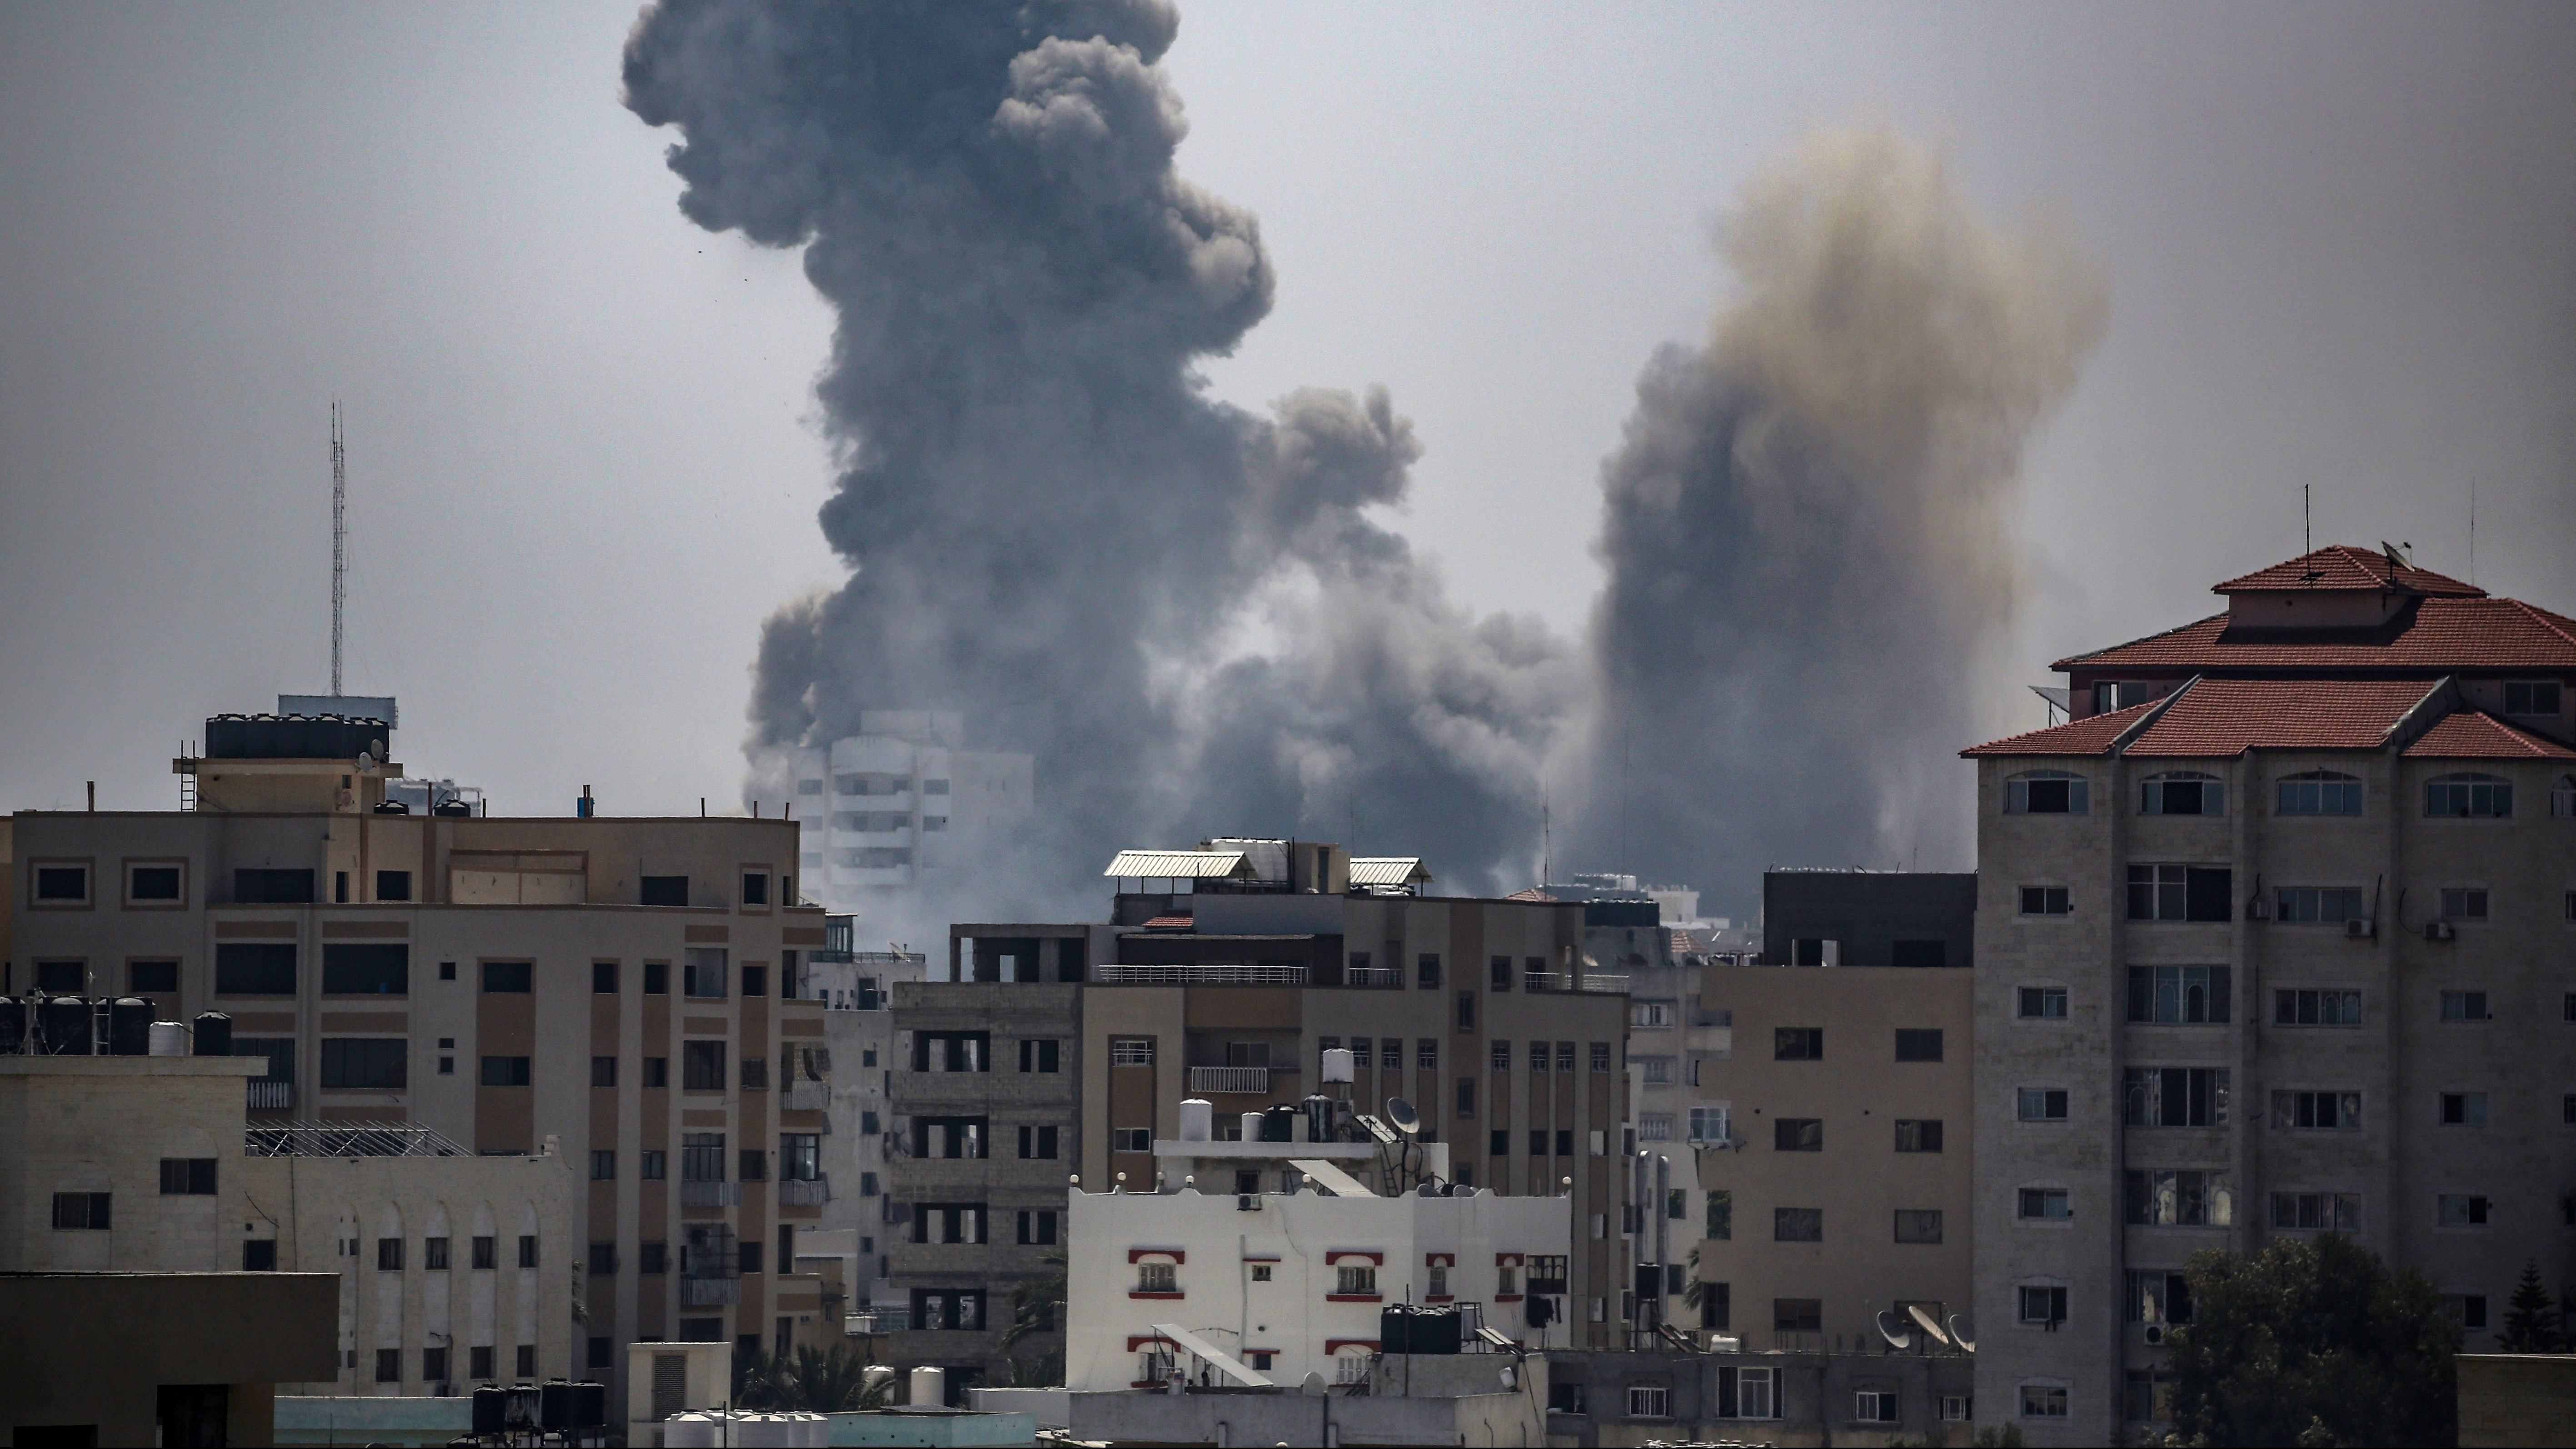 Ascienden a 197 los muertos en Gaza por los ataques de Israel